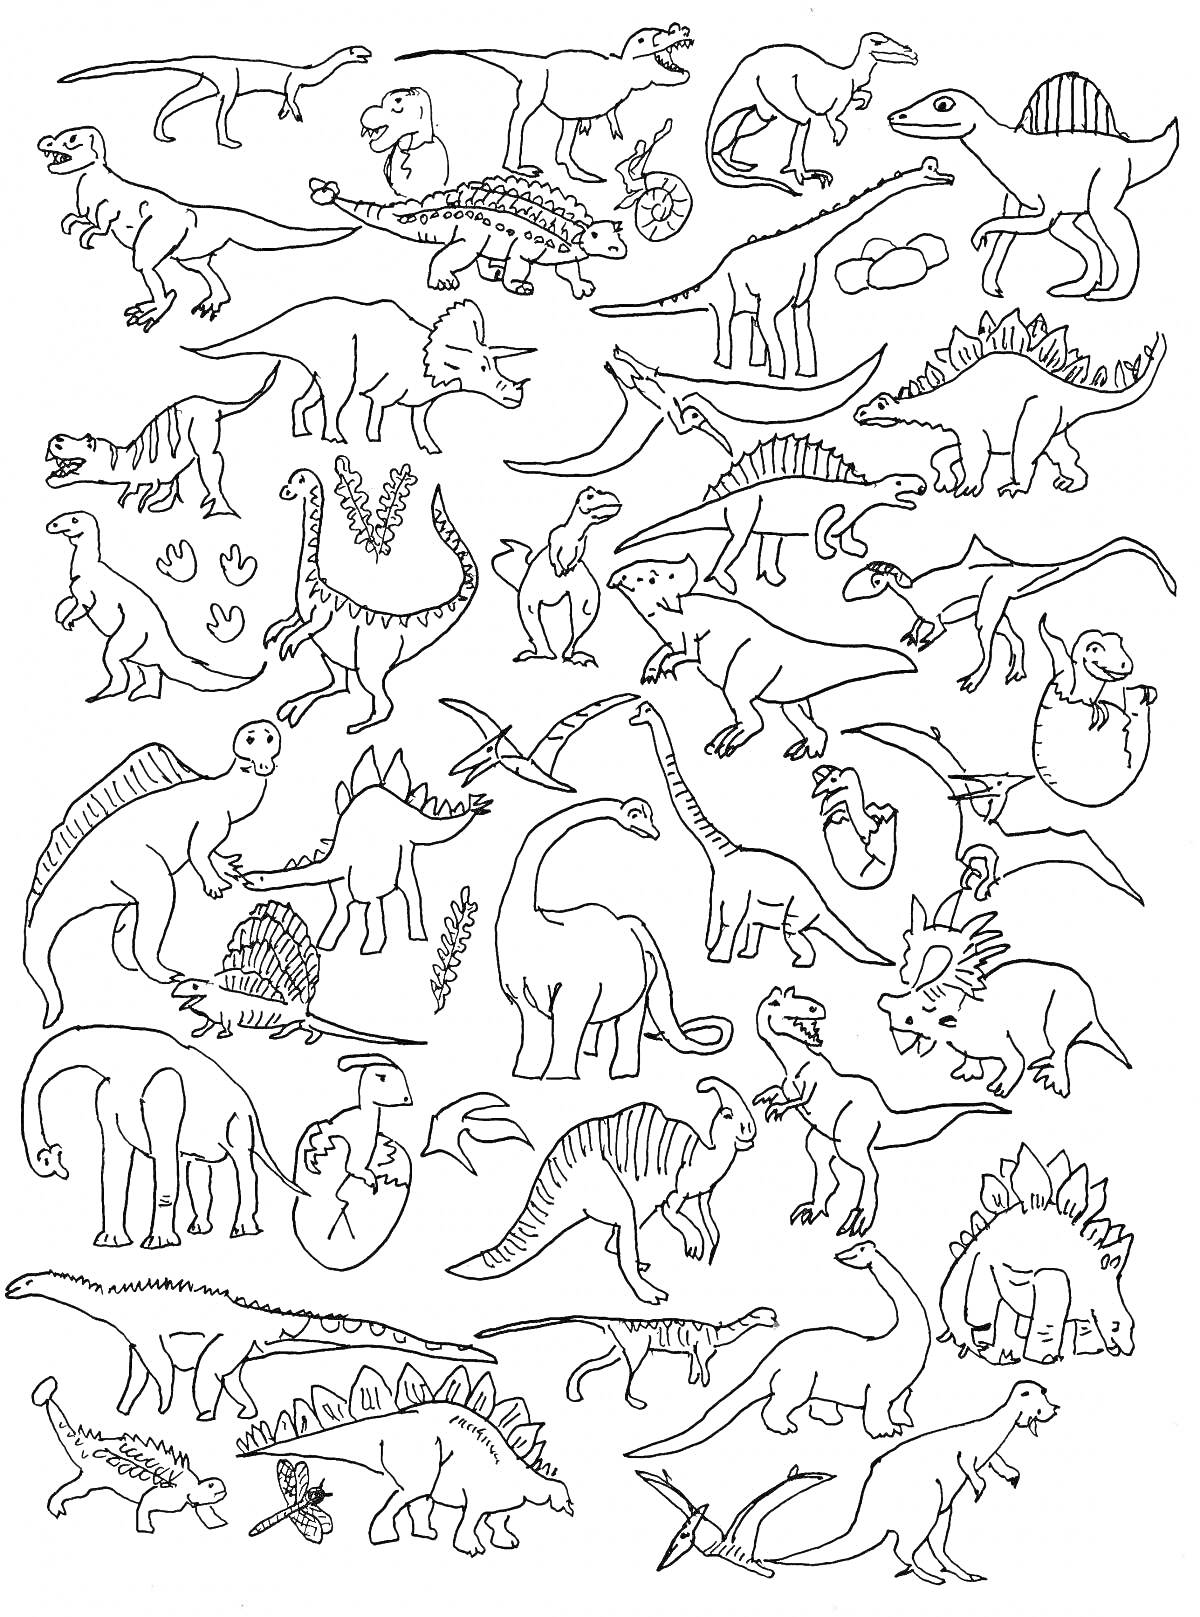 Раскраска Динозавры - различные виды и сцены с динозаврами